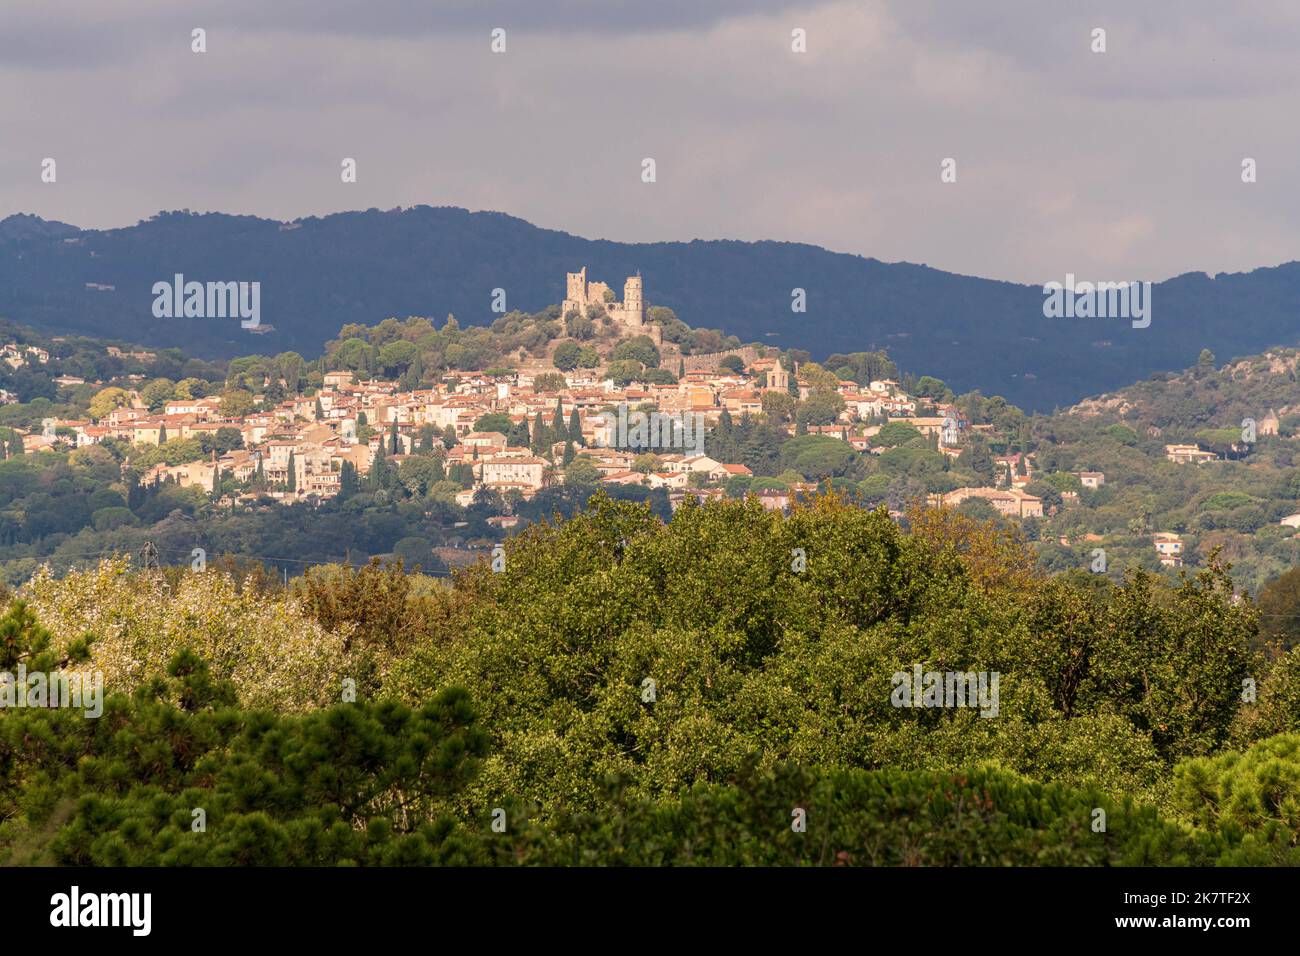 La città di Grimaud e il suo castello in rovina nel dipartimento del Var della regione Provenza-Alpi-Côte Azzurra, nel sud della Francia. Foto Stock